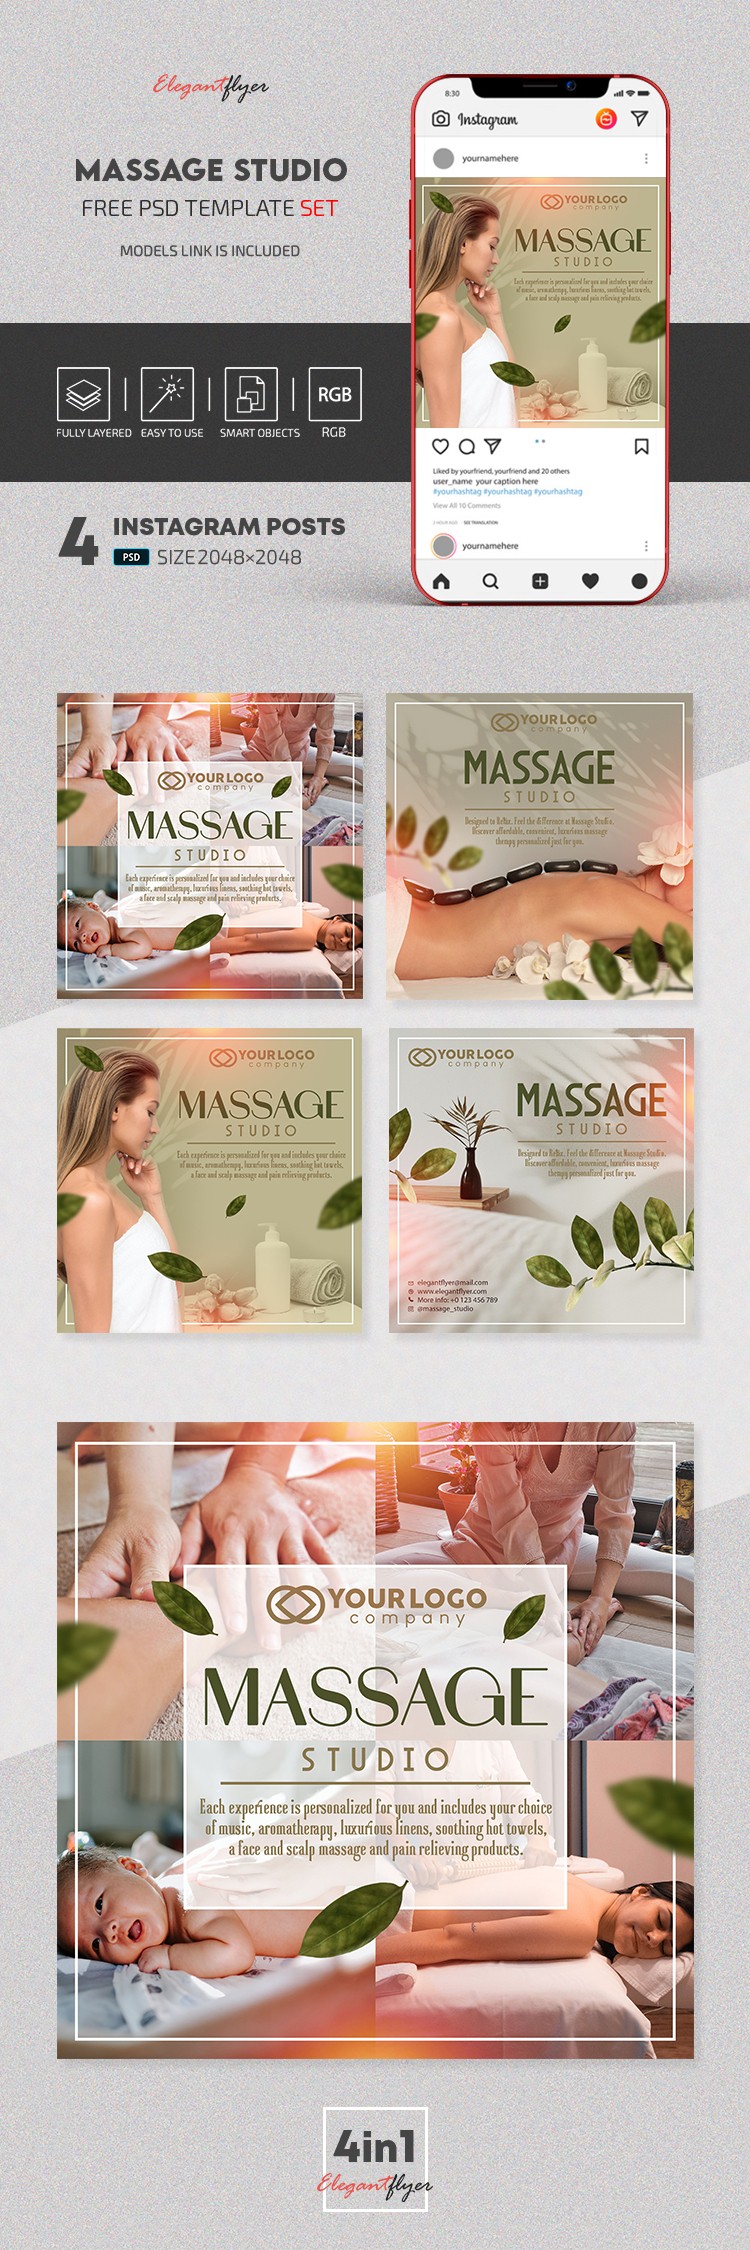 Estudio de masajes Instagram. by ElegantFlyer